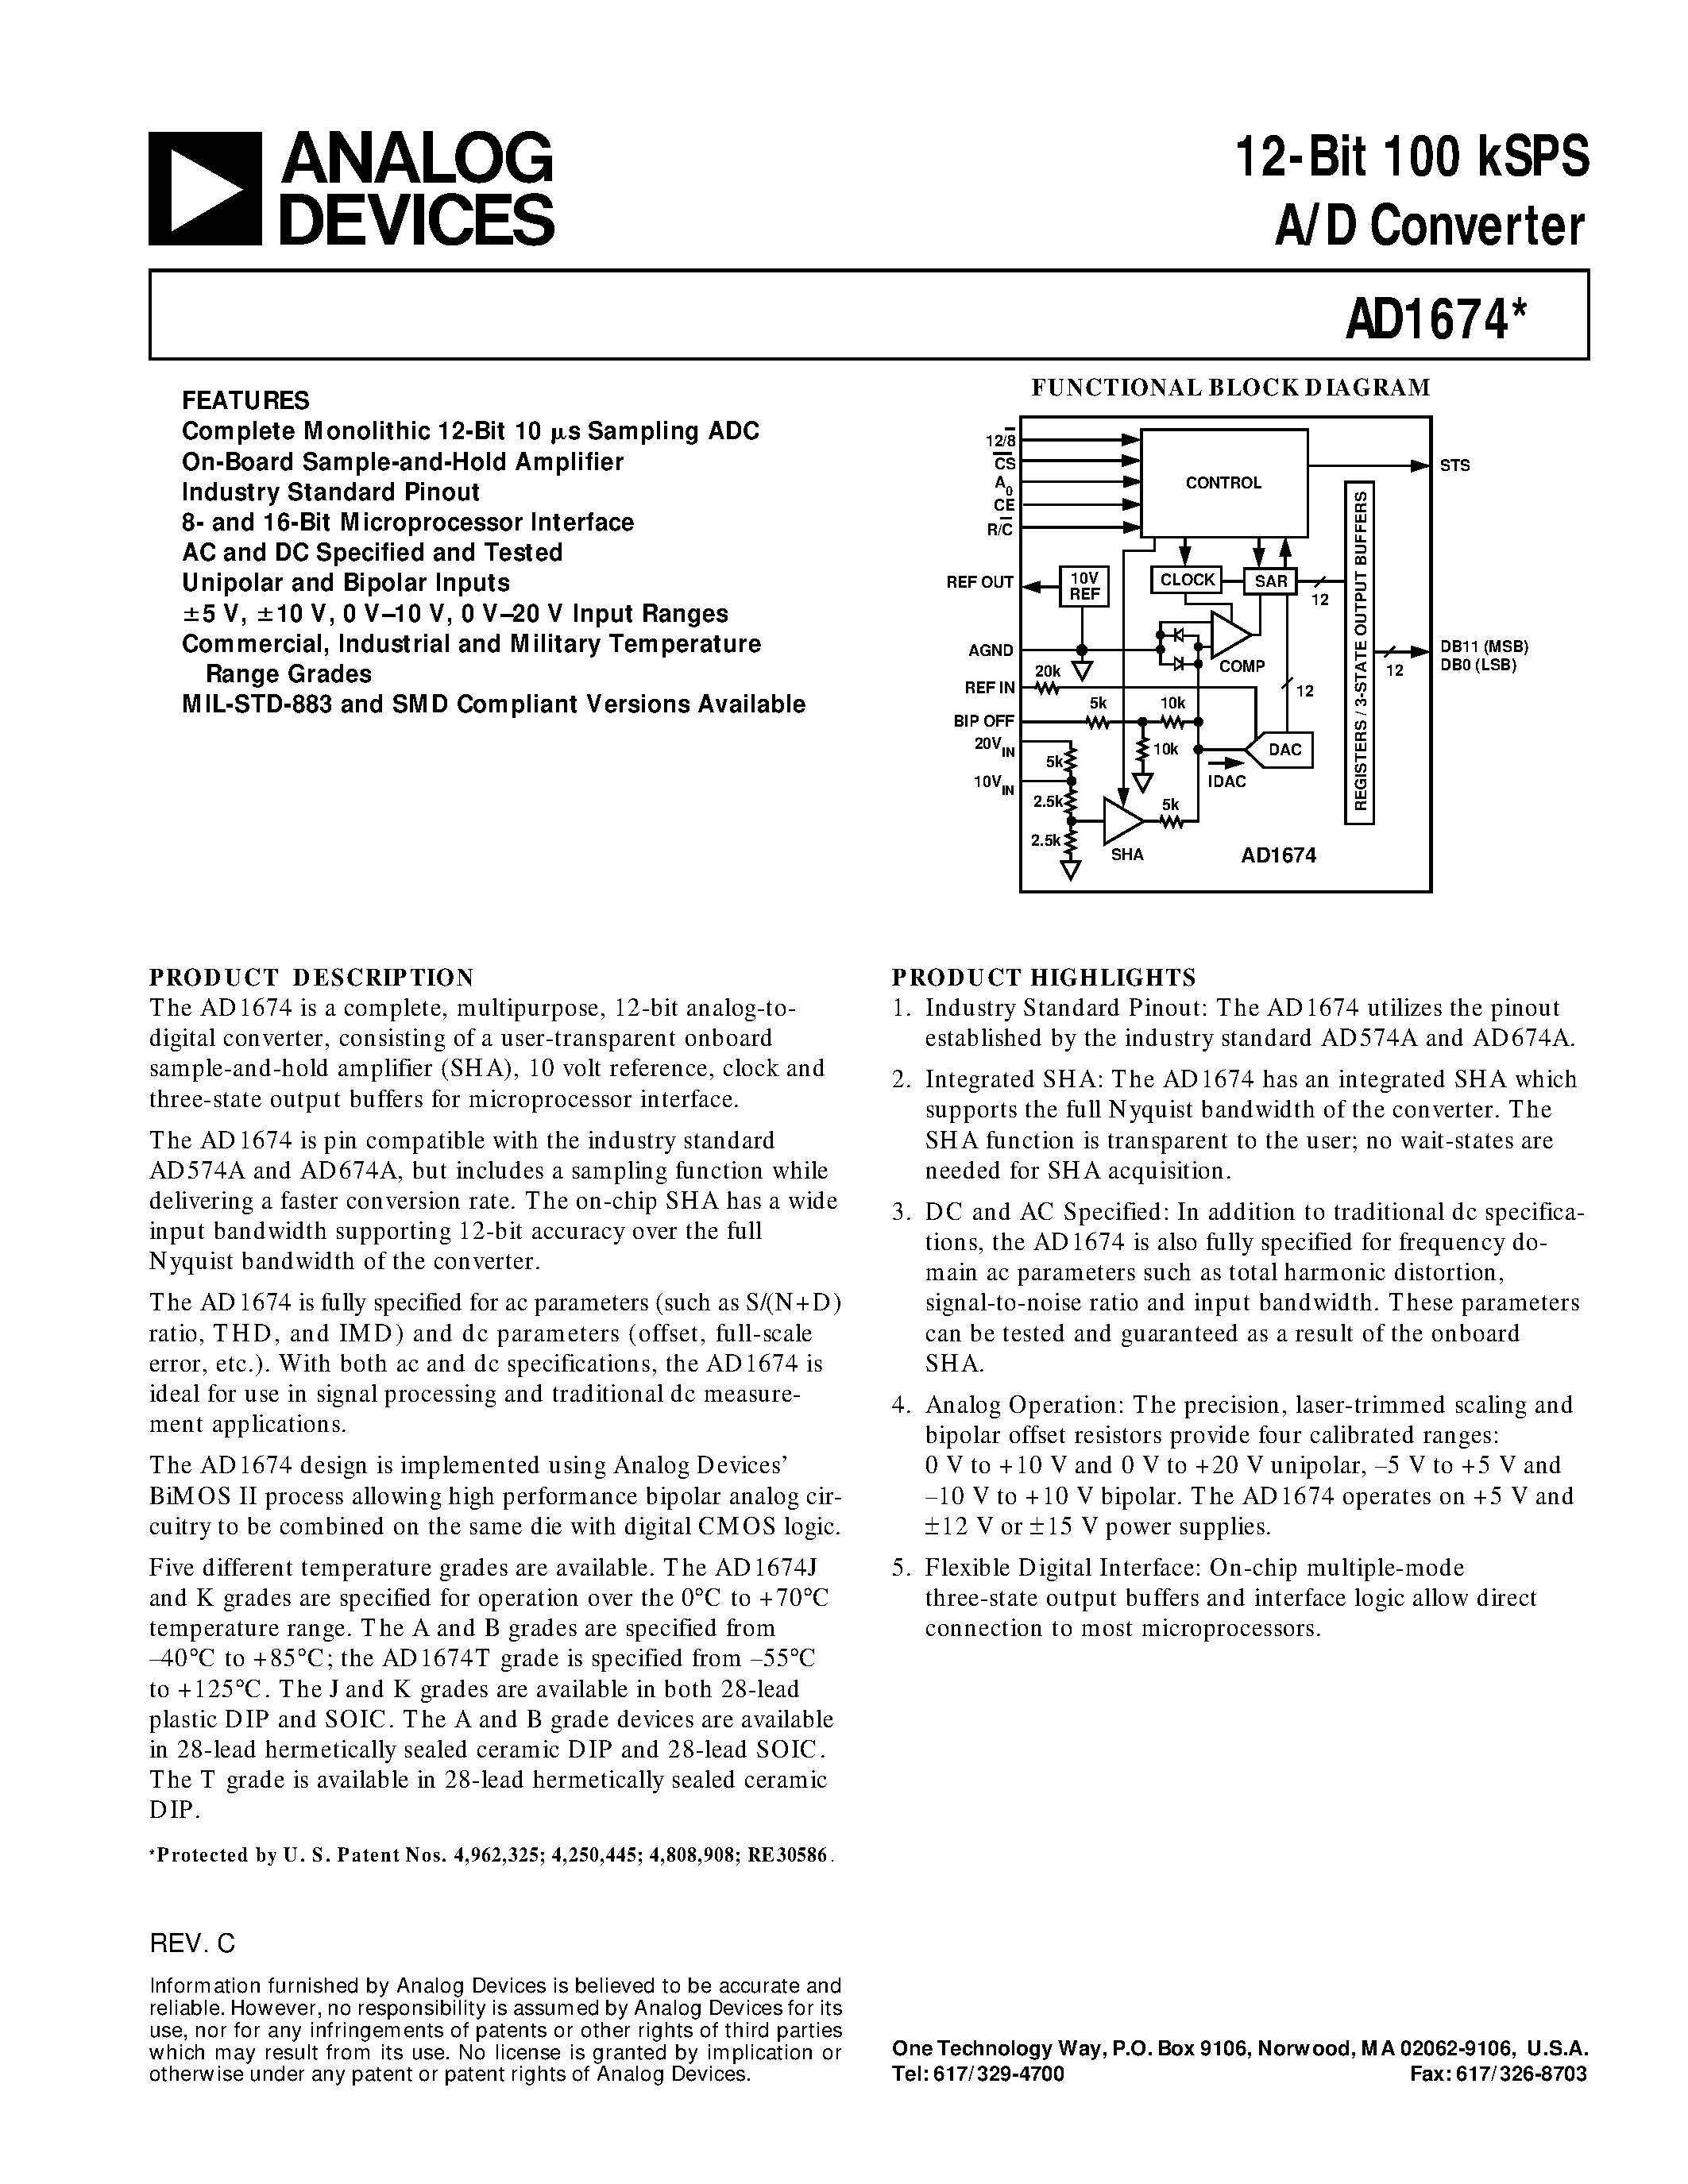 Datasheet AD1674JR - 12-Bit 100 kSPS A/D Converter page 1